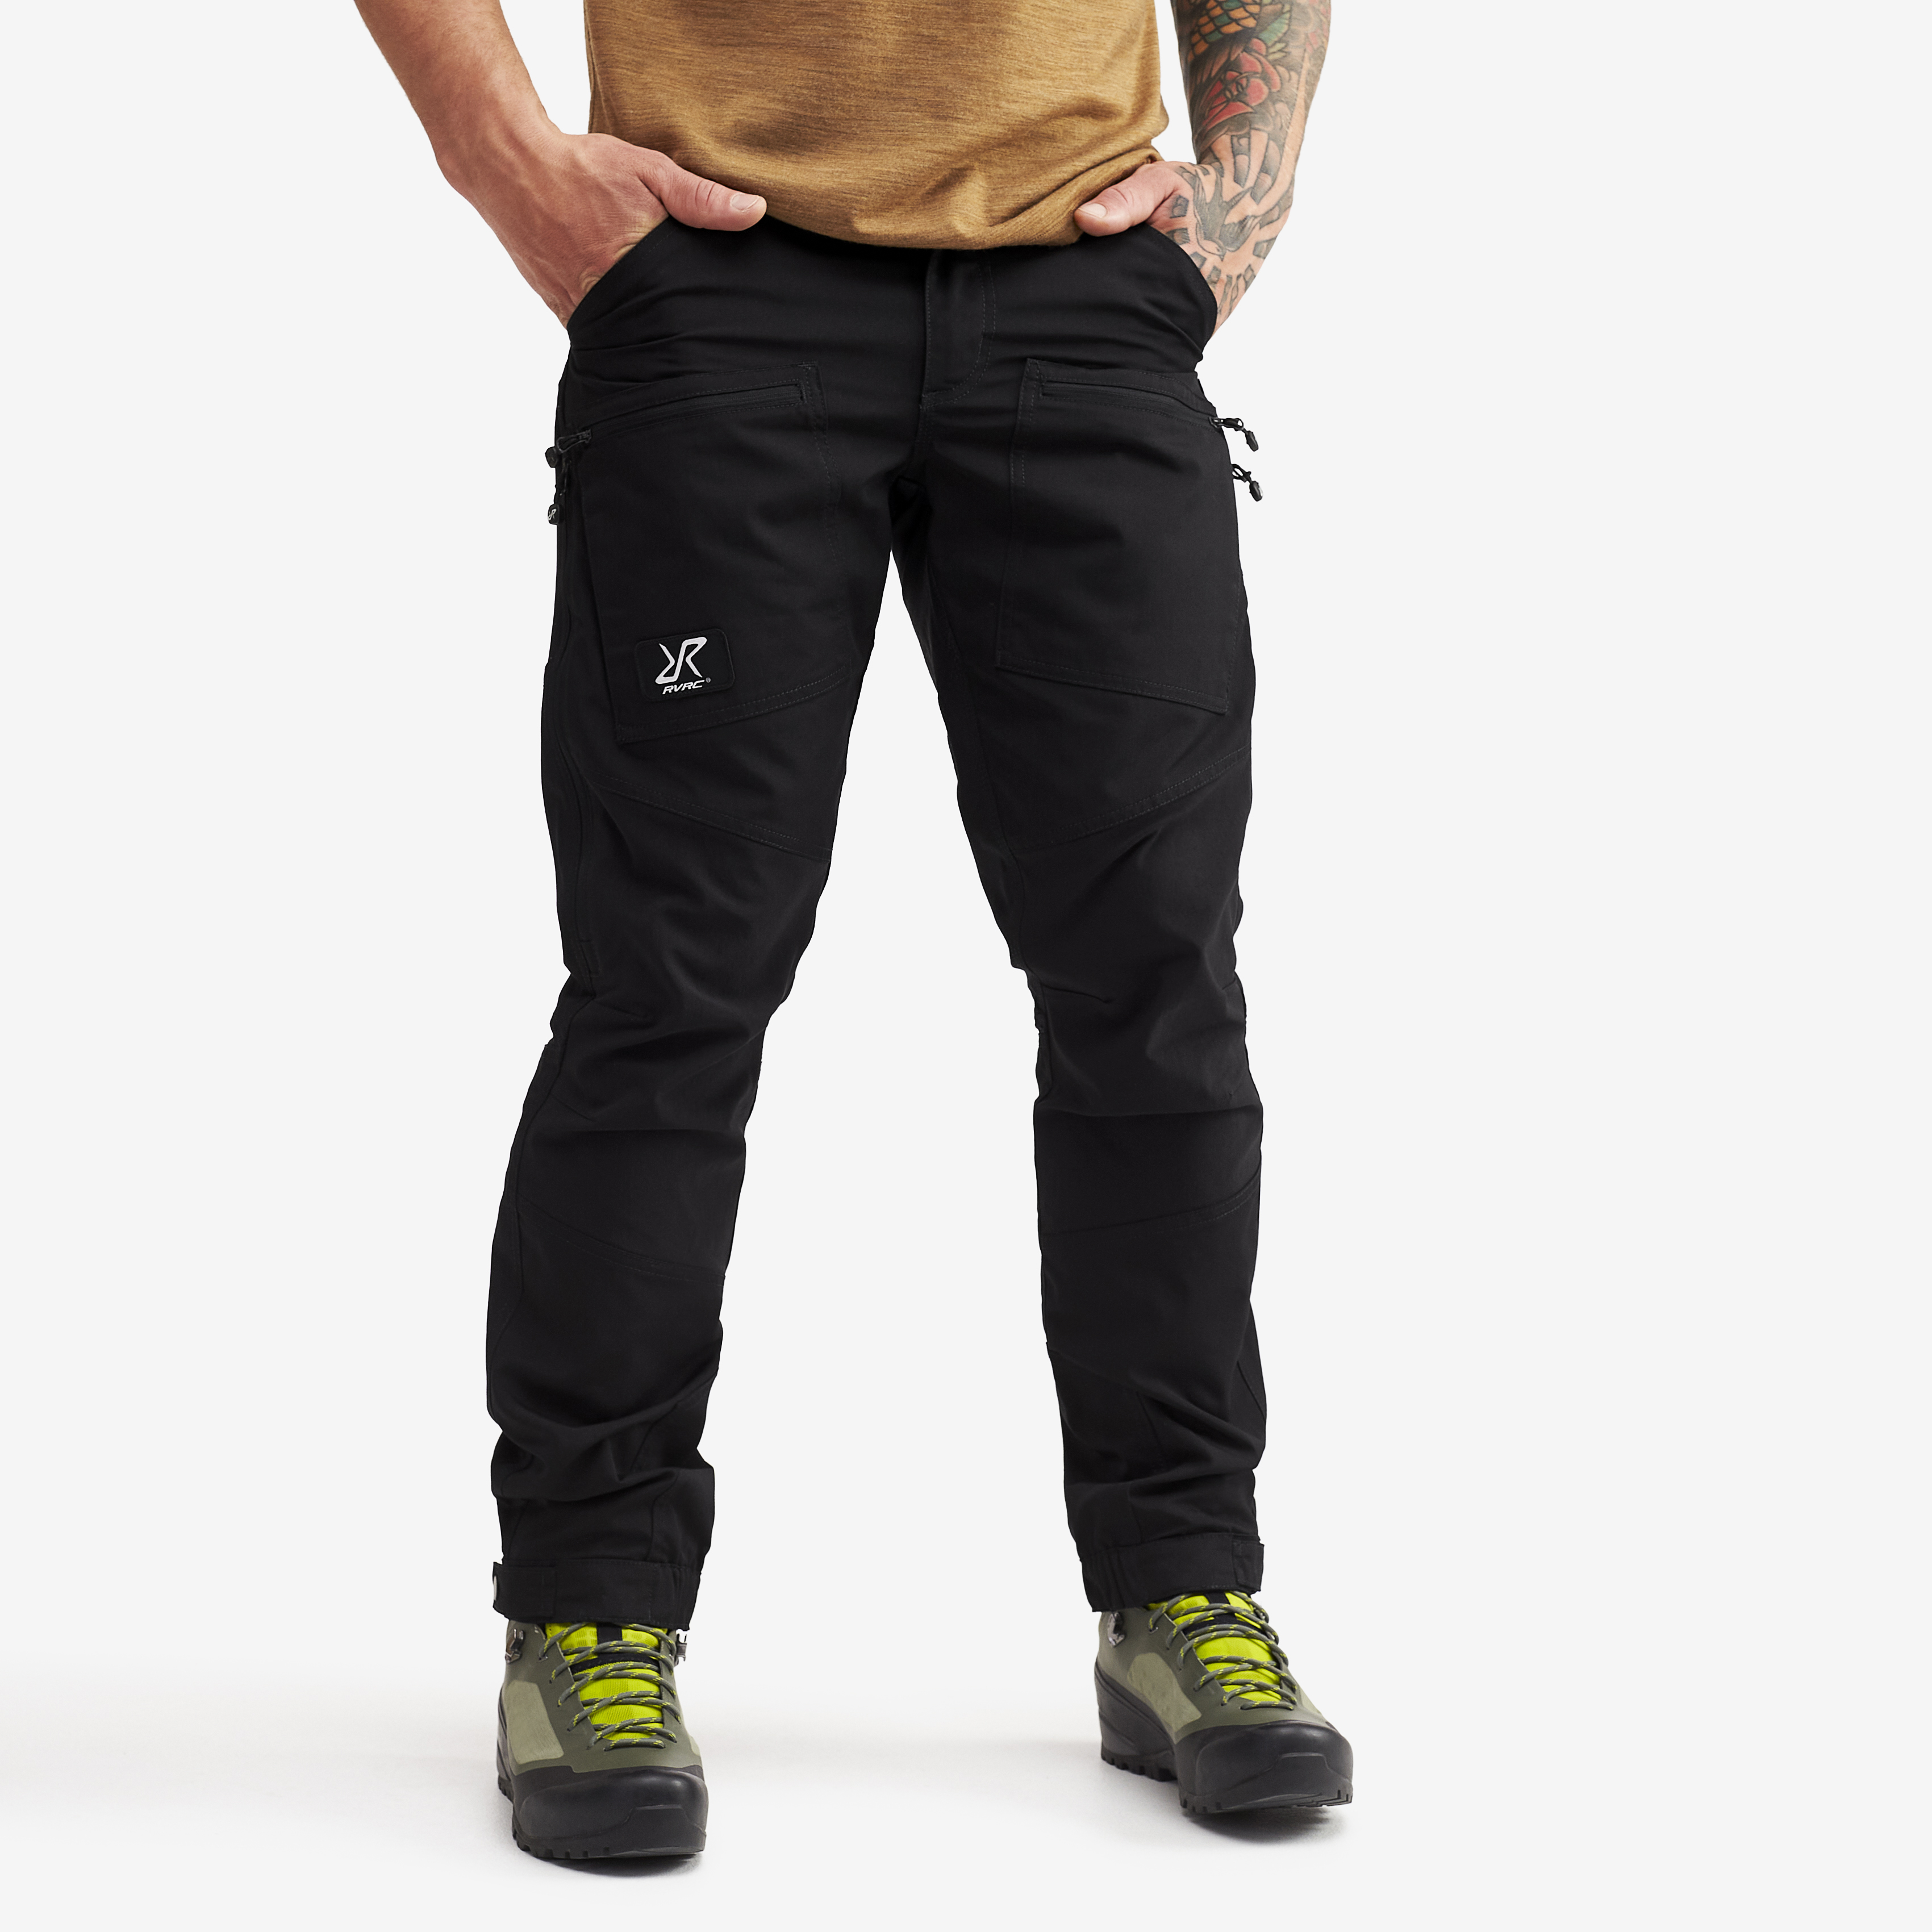 Nordwand Pro Short turistické kalhoty pro muže v černé barvě